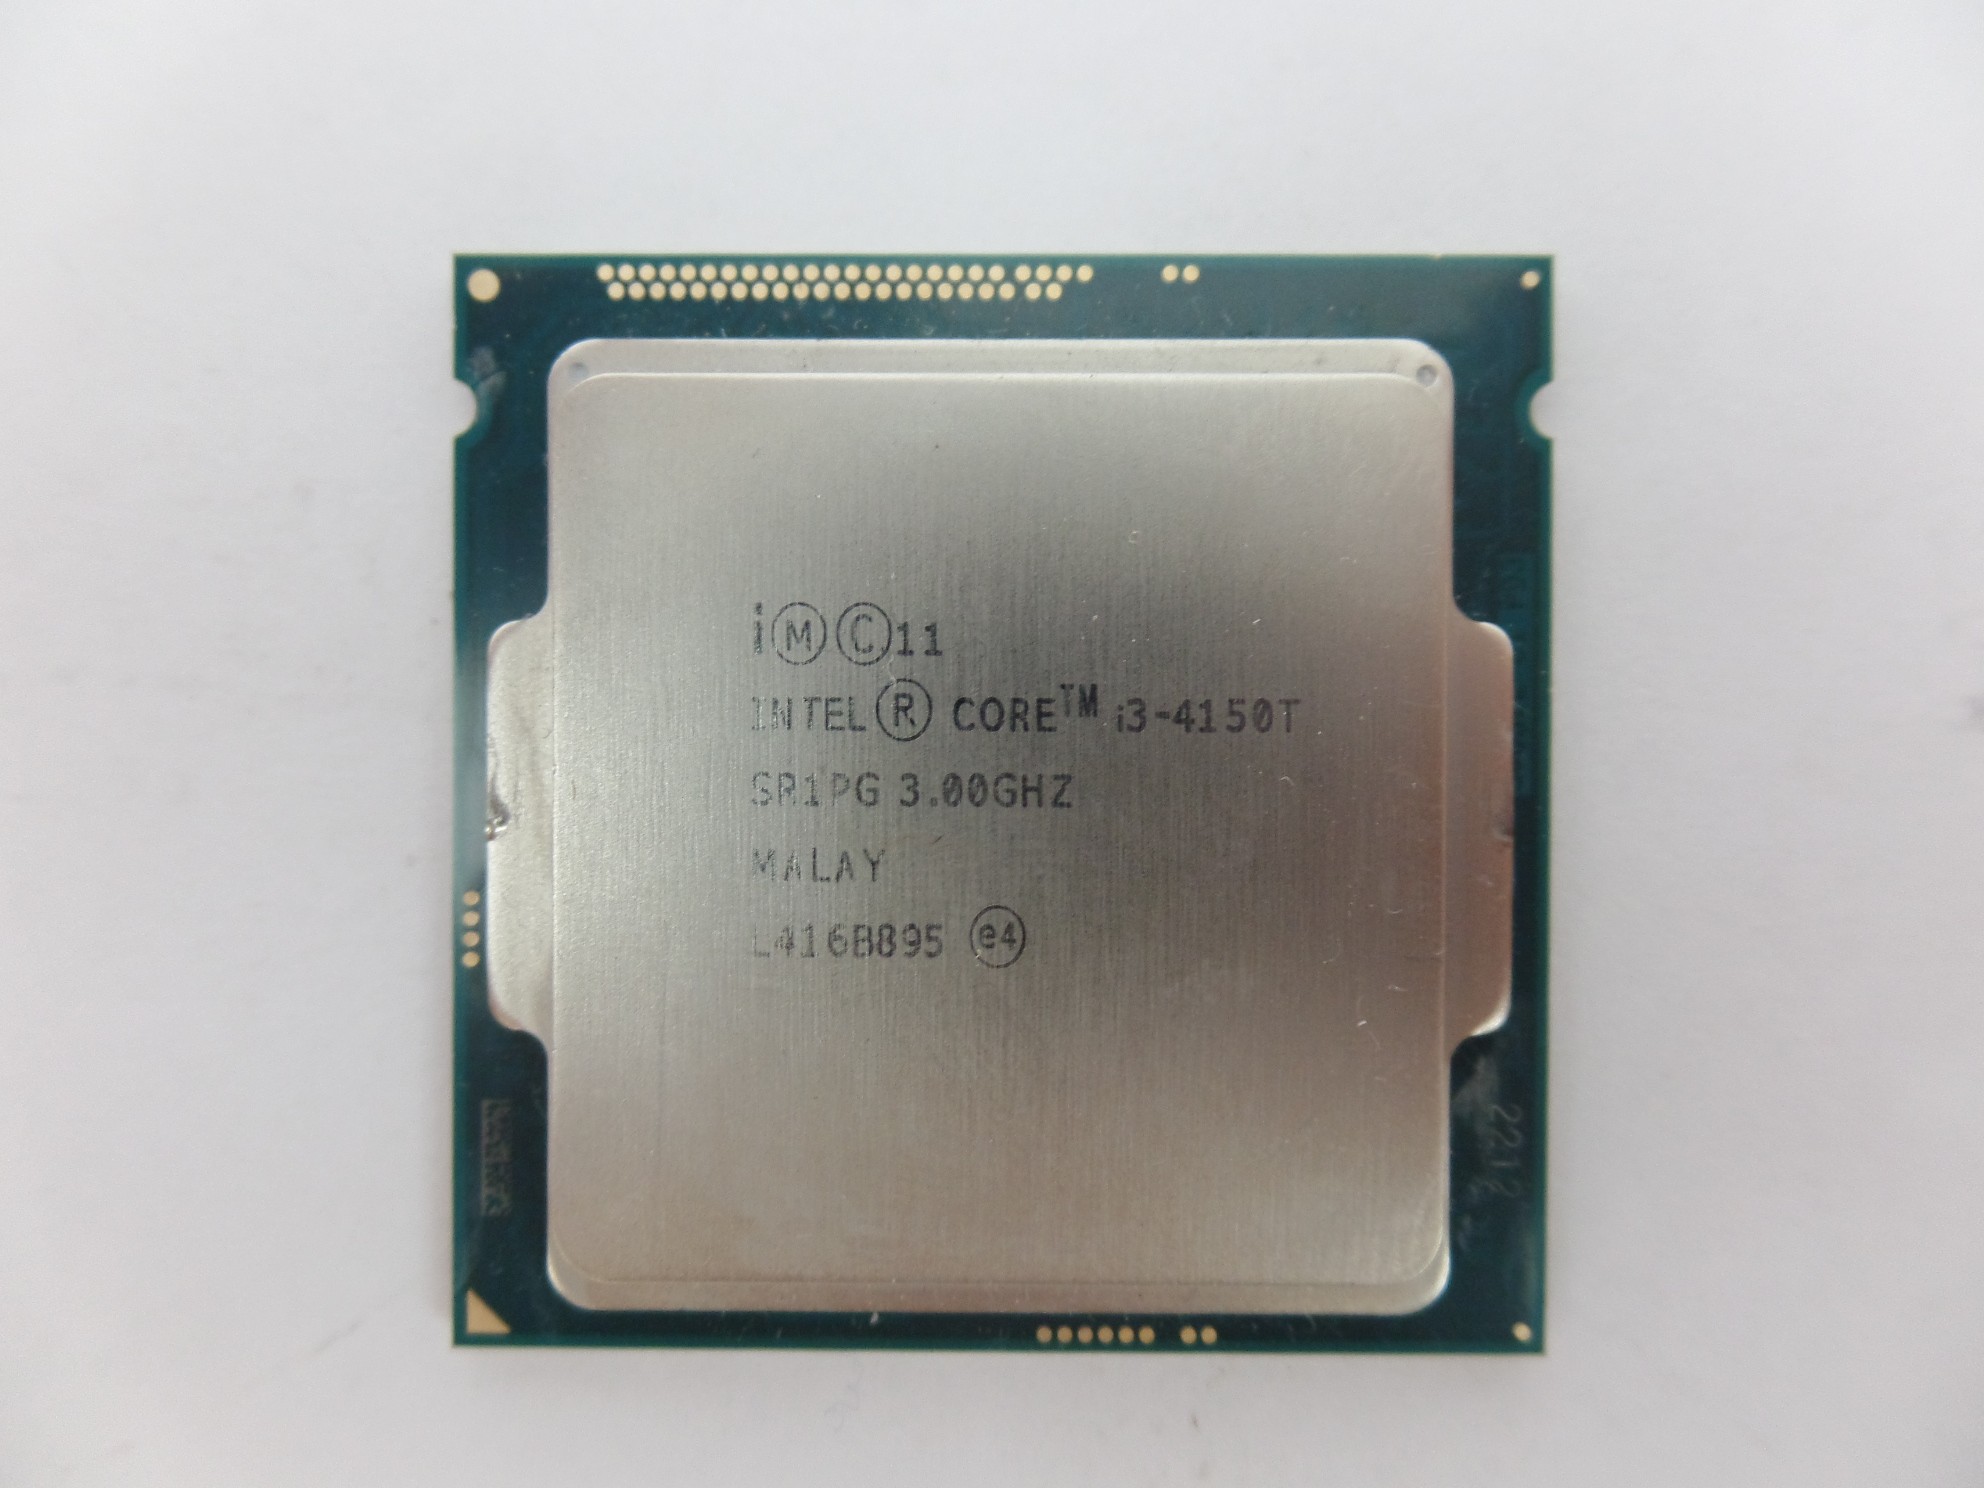 Intel Core i3-4150T SR1PG 3.00GHz Desktop CPU Socket Processor